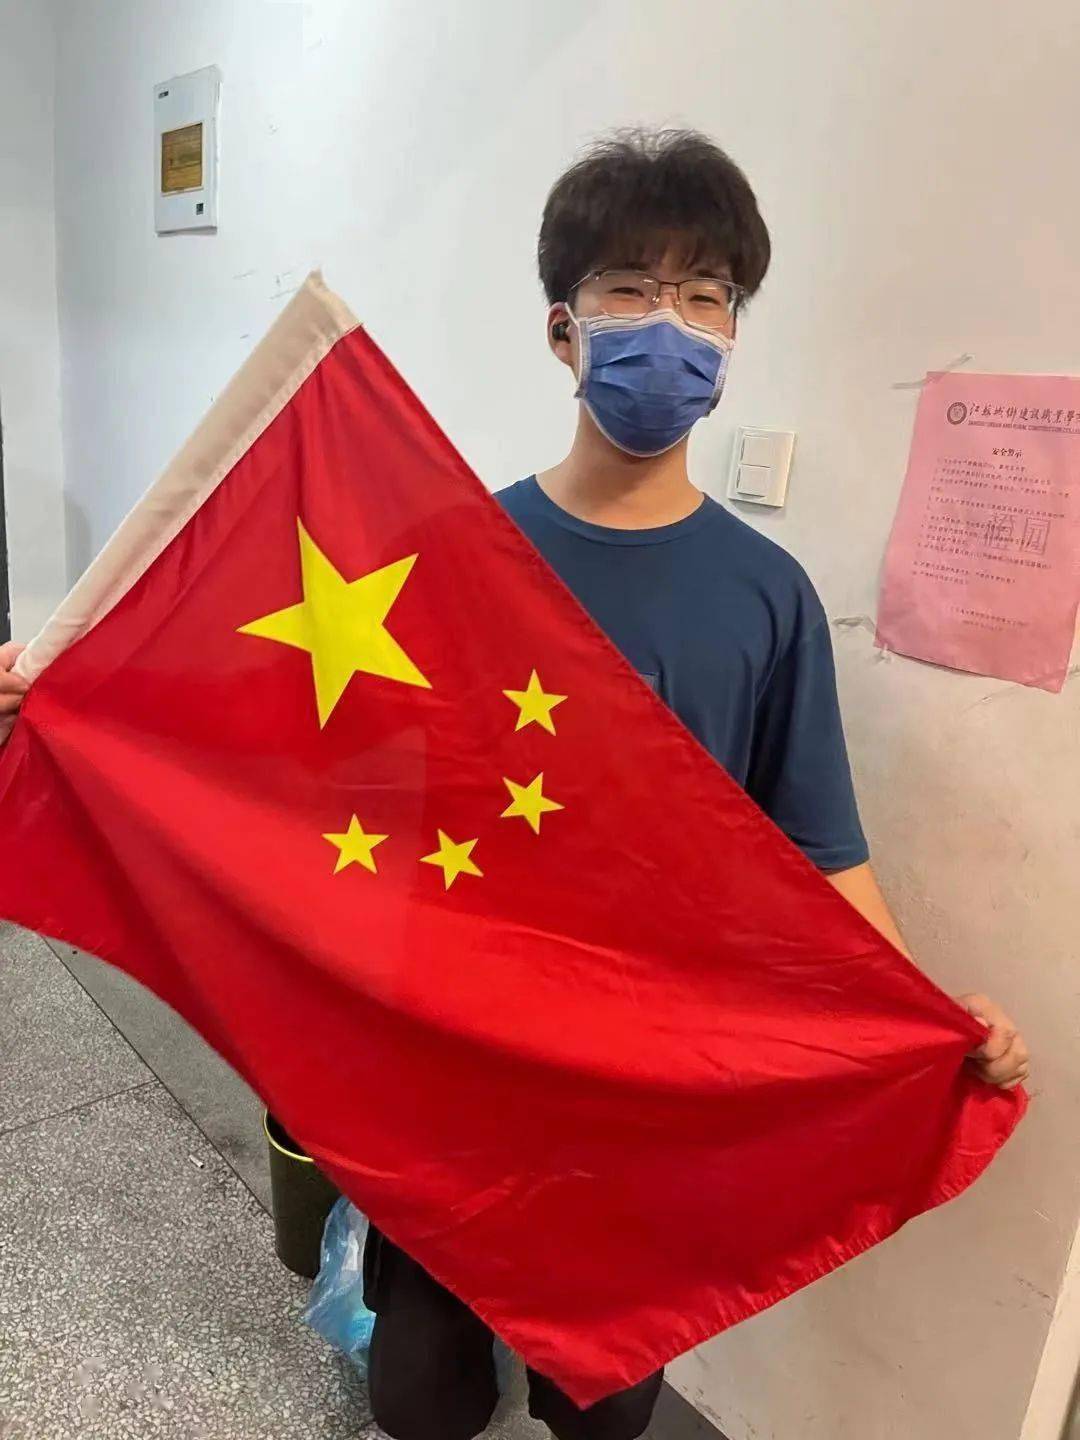 最像中国的国旗图片